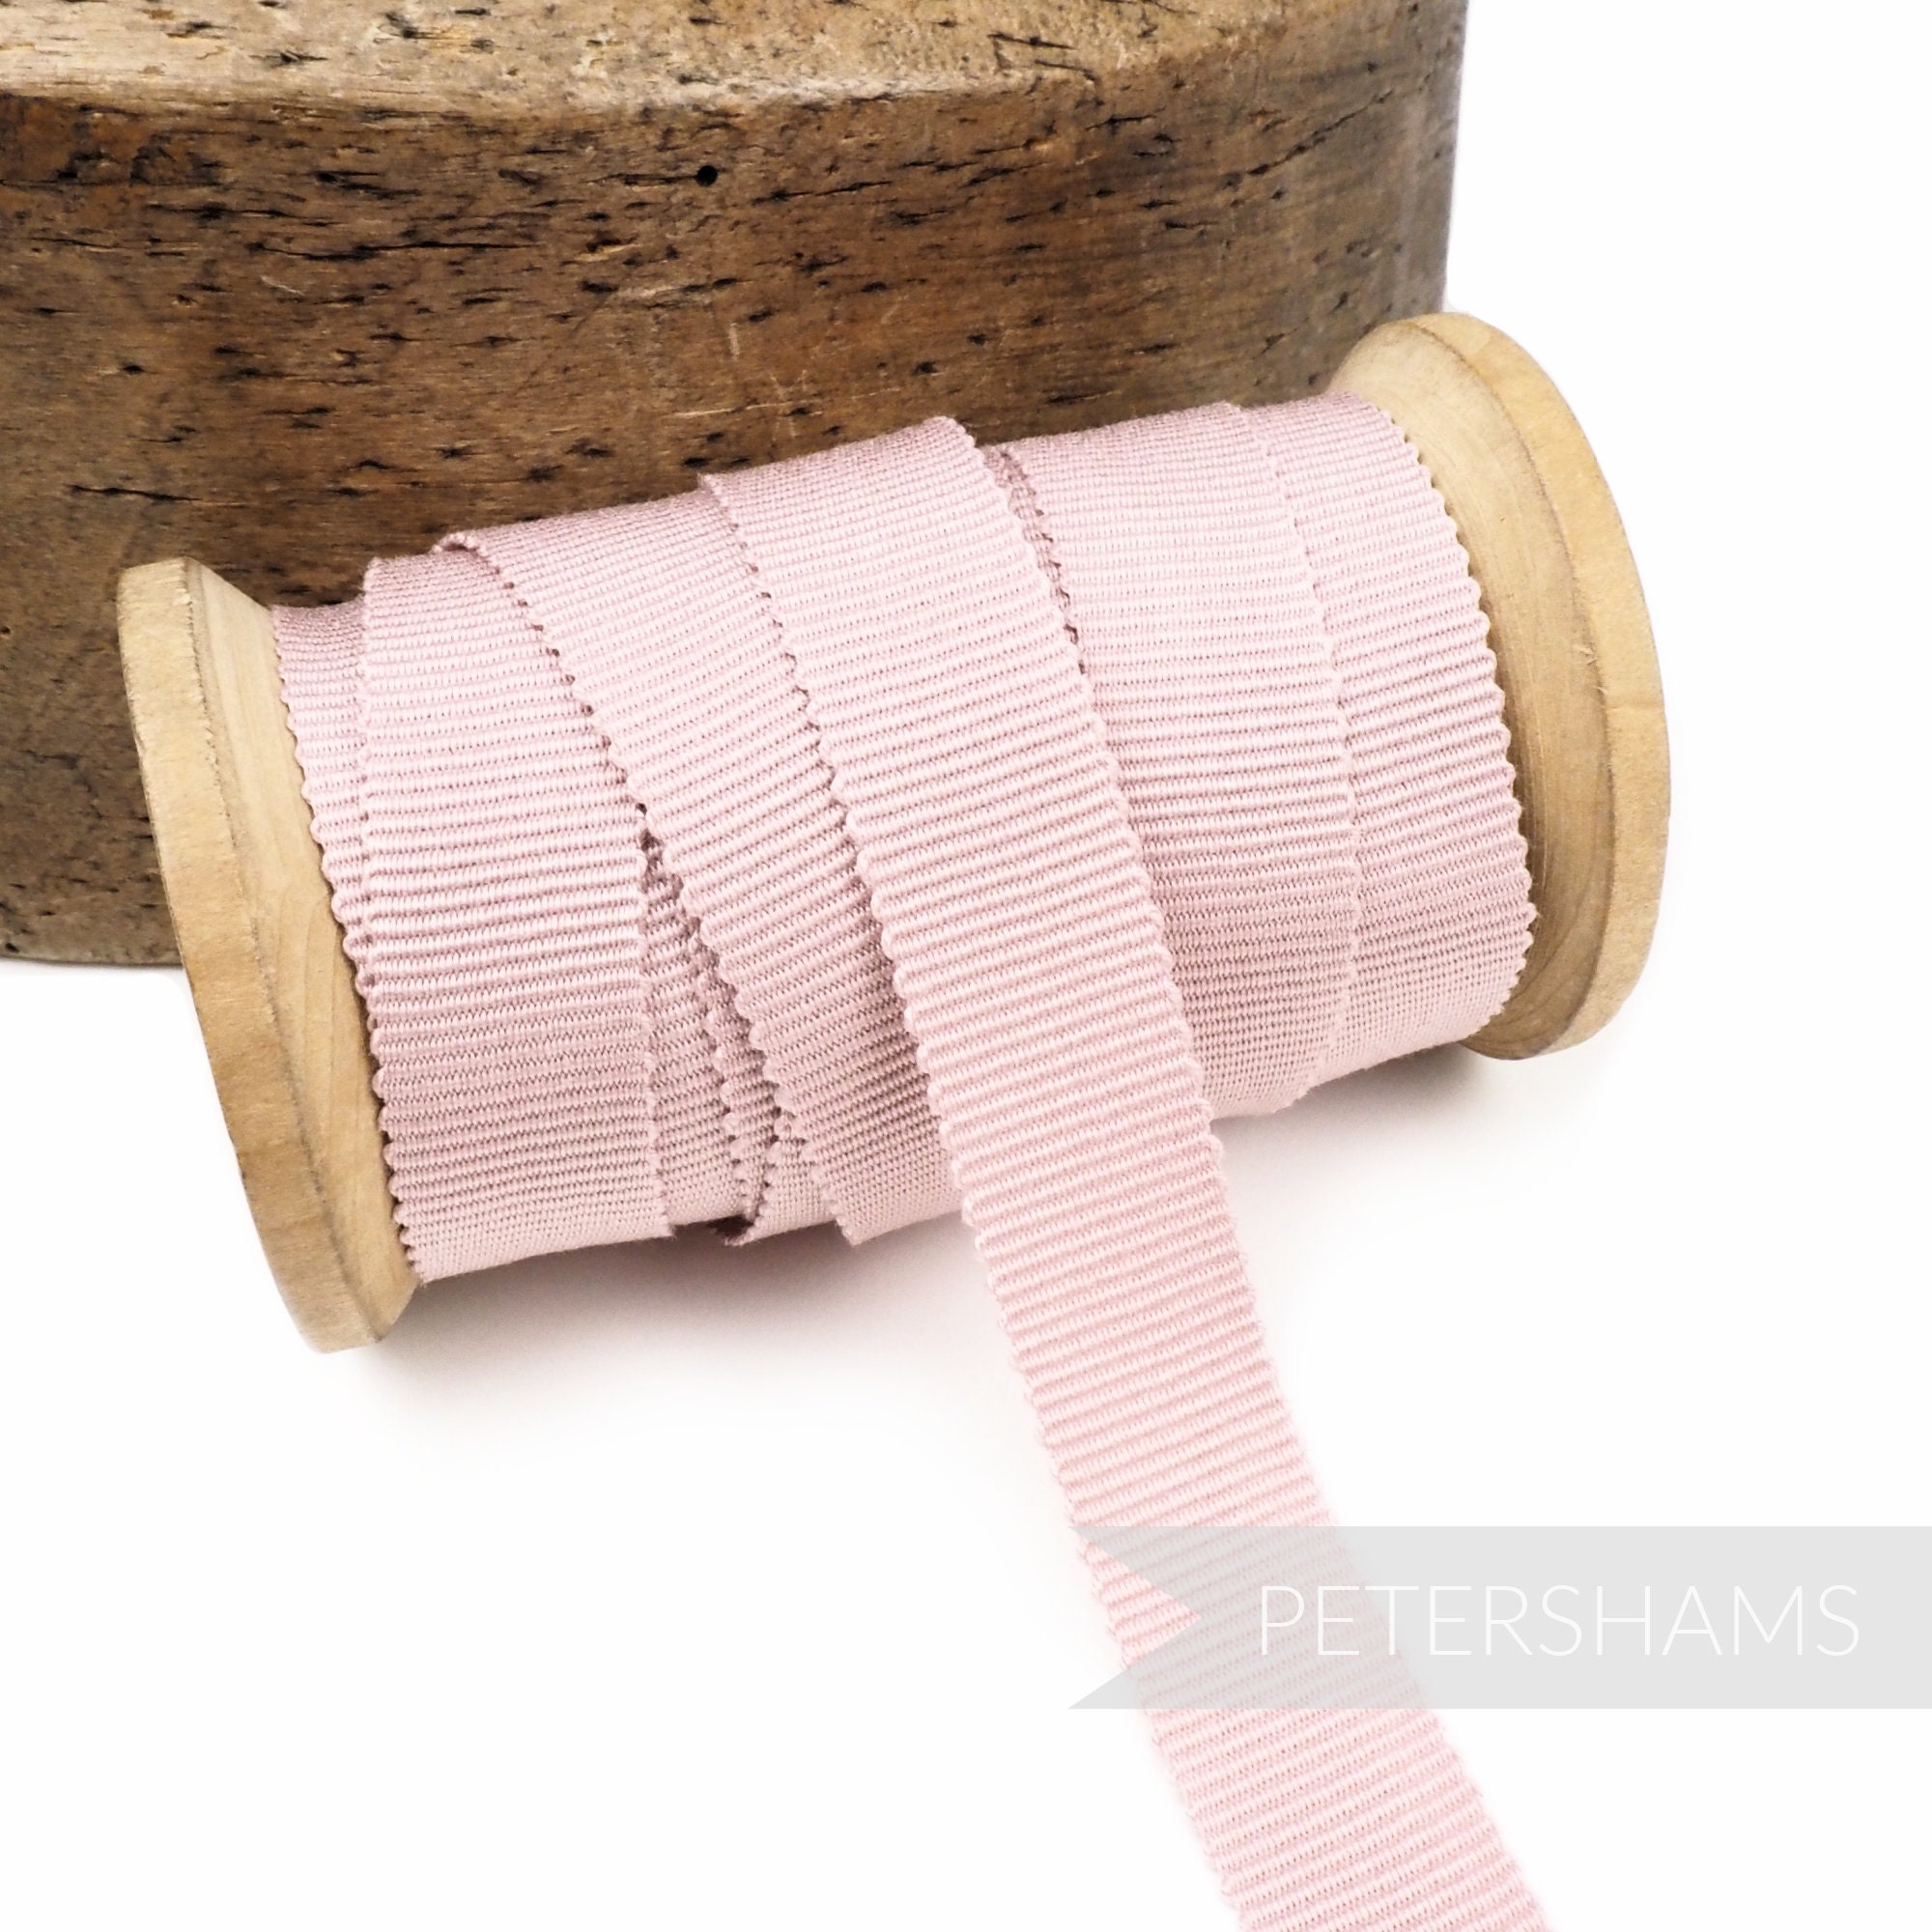 Soft Pink Ribbon 3mm Satin Ribbon 99.5 Yard Skinny Craft Ribbon Gift  Wrapping Ribbon Thin Florist Ribbon Pink Decorative Ribbon 